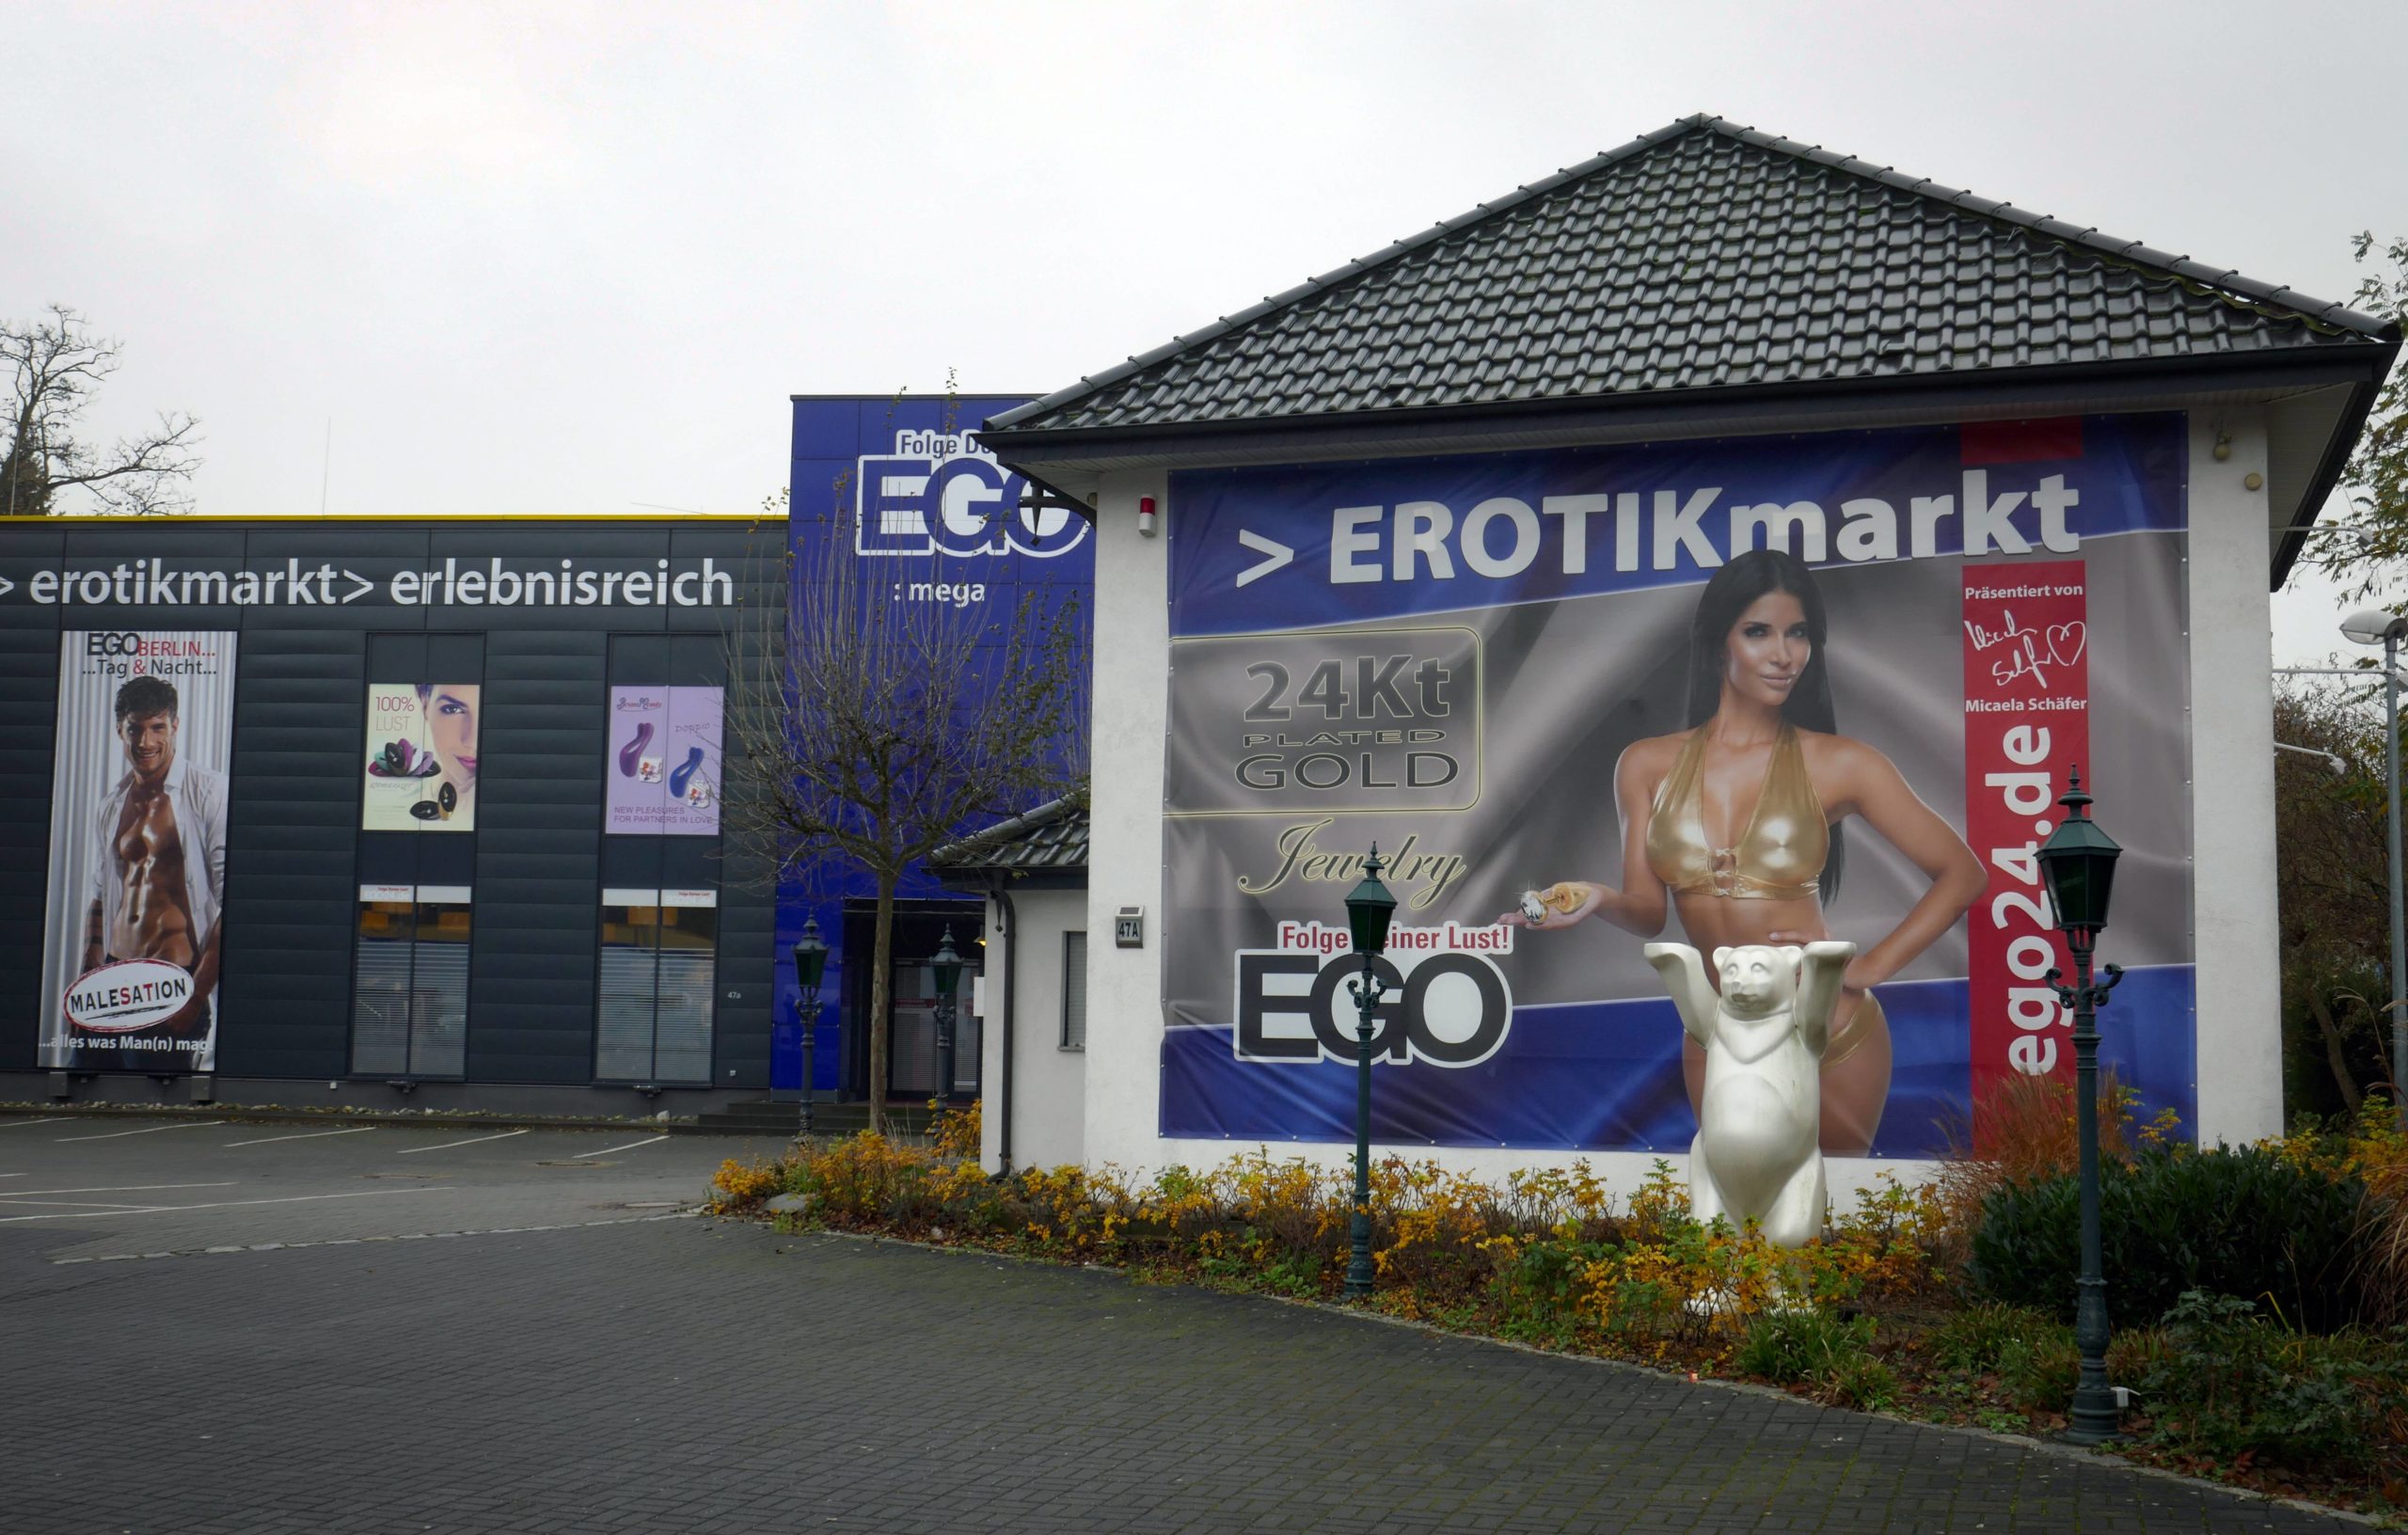 EGO Erotikmarkt in der Charlottenburger Chaussee in Spandau, 2017. Foto: Imago/Jürgen Ritter